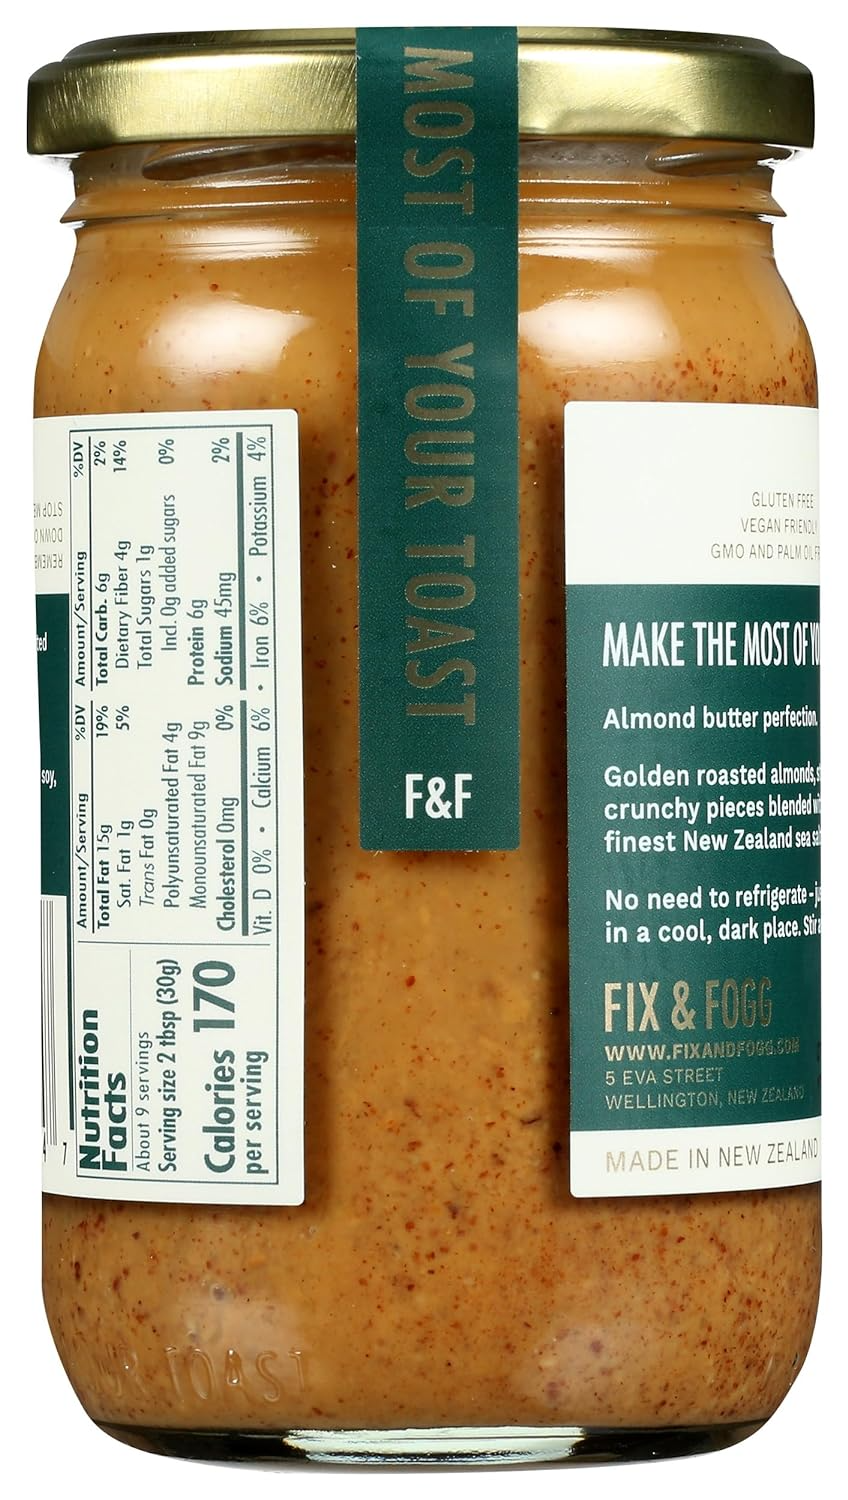 Fix and Fogg Crunchy Almond Butter, 10 Oz